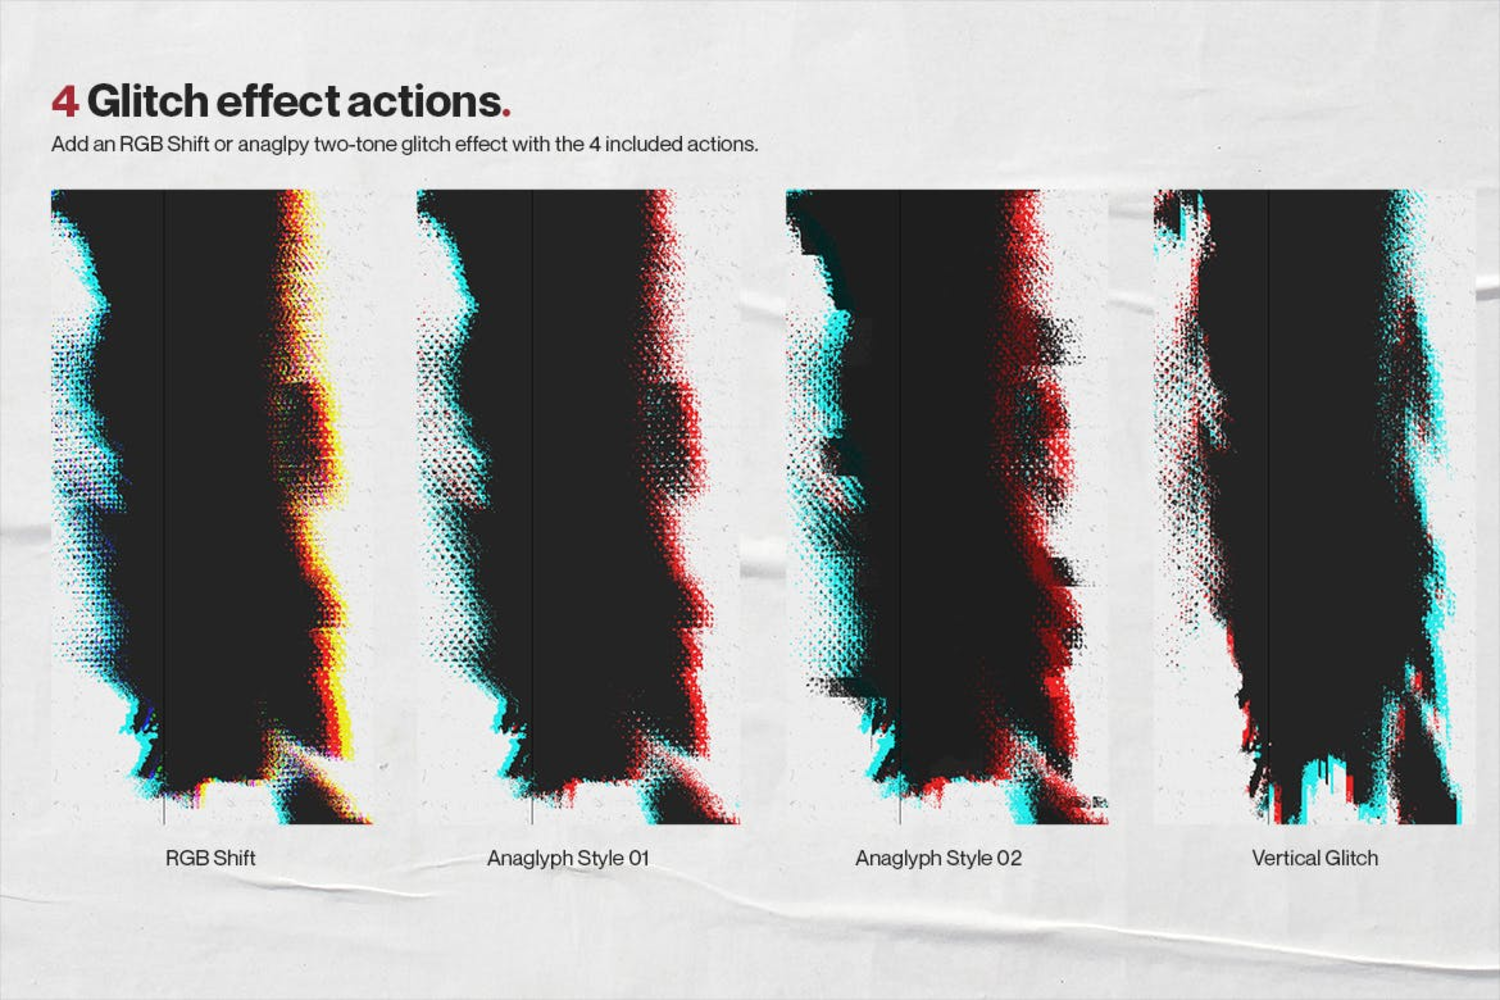 3047 嘻哈风废弃做旧扭曲变形LOGO字体置换效果滤镜海报设计PS设计素材 Ultimate Distortion Poster Creator